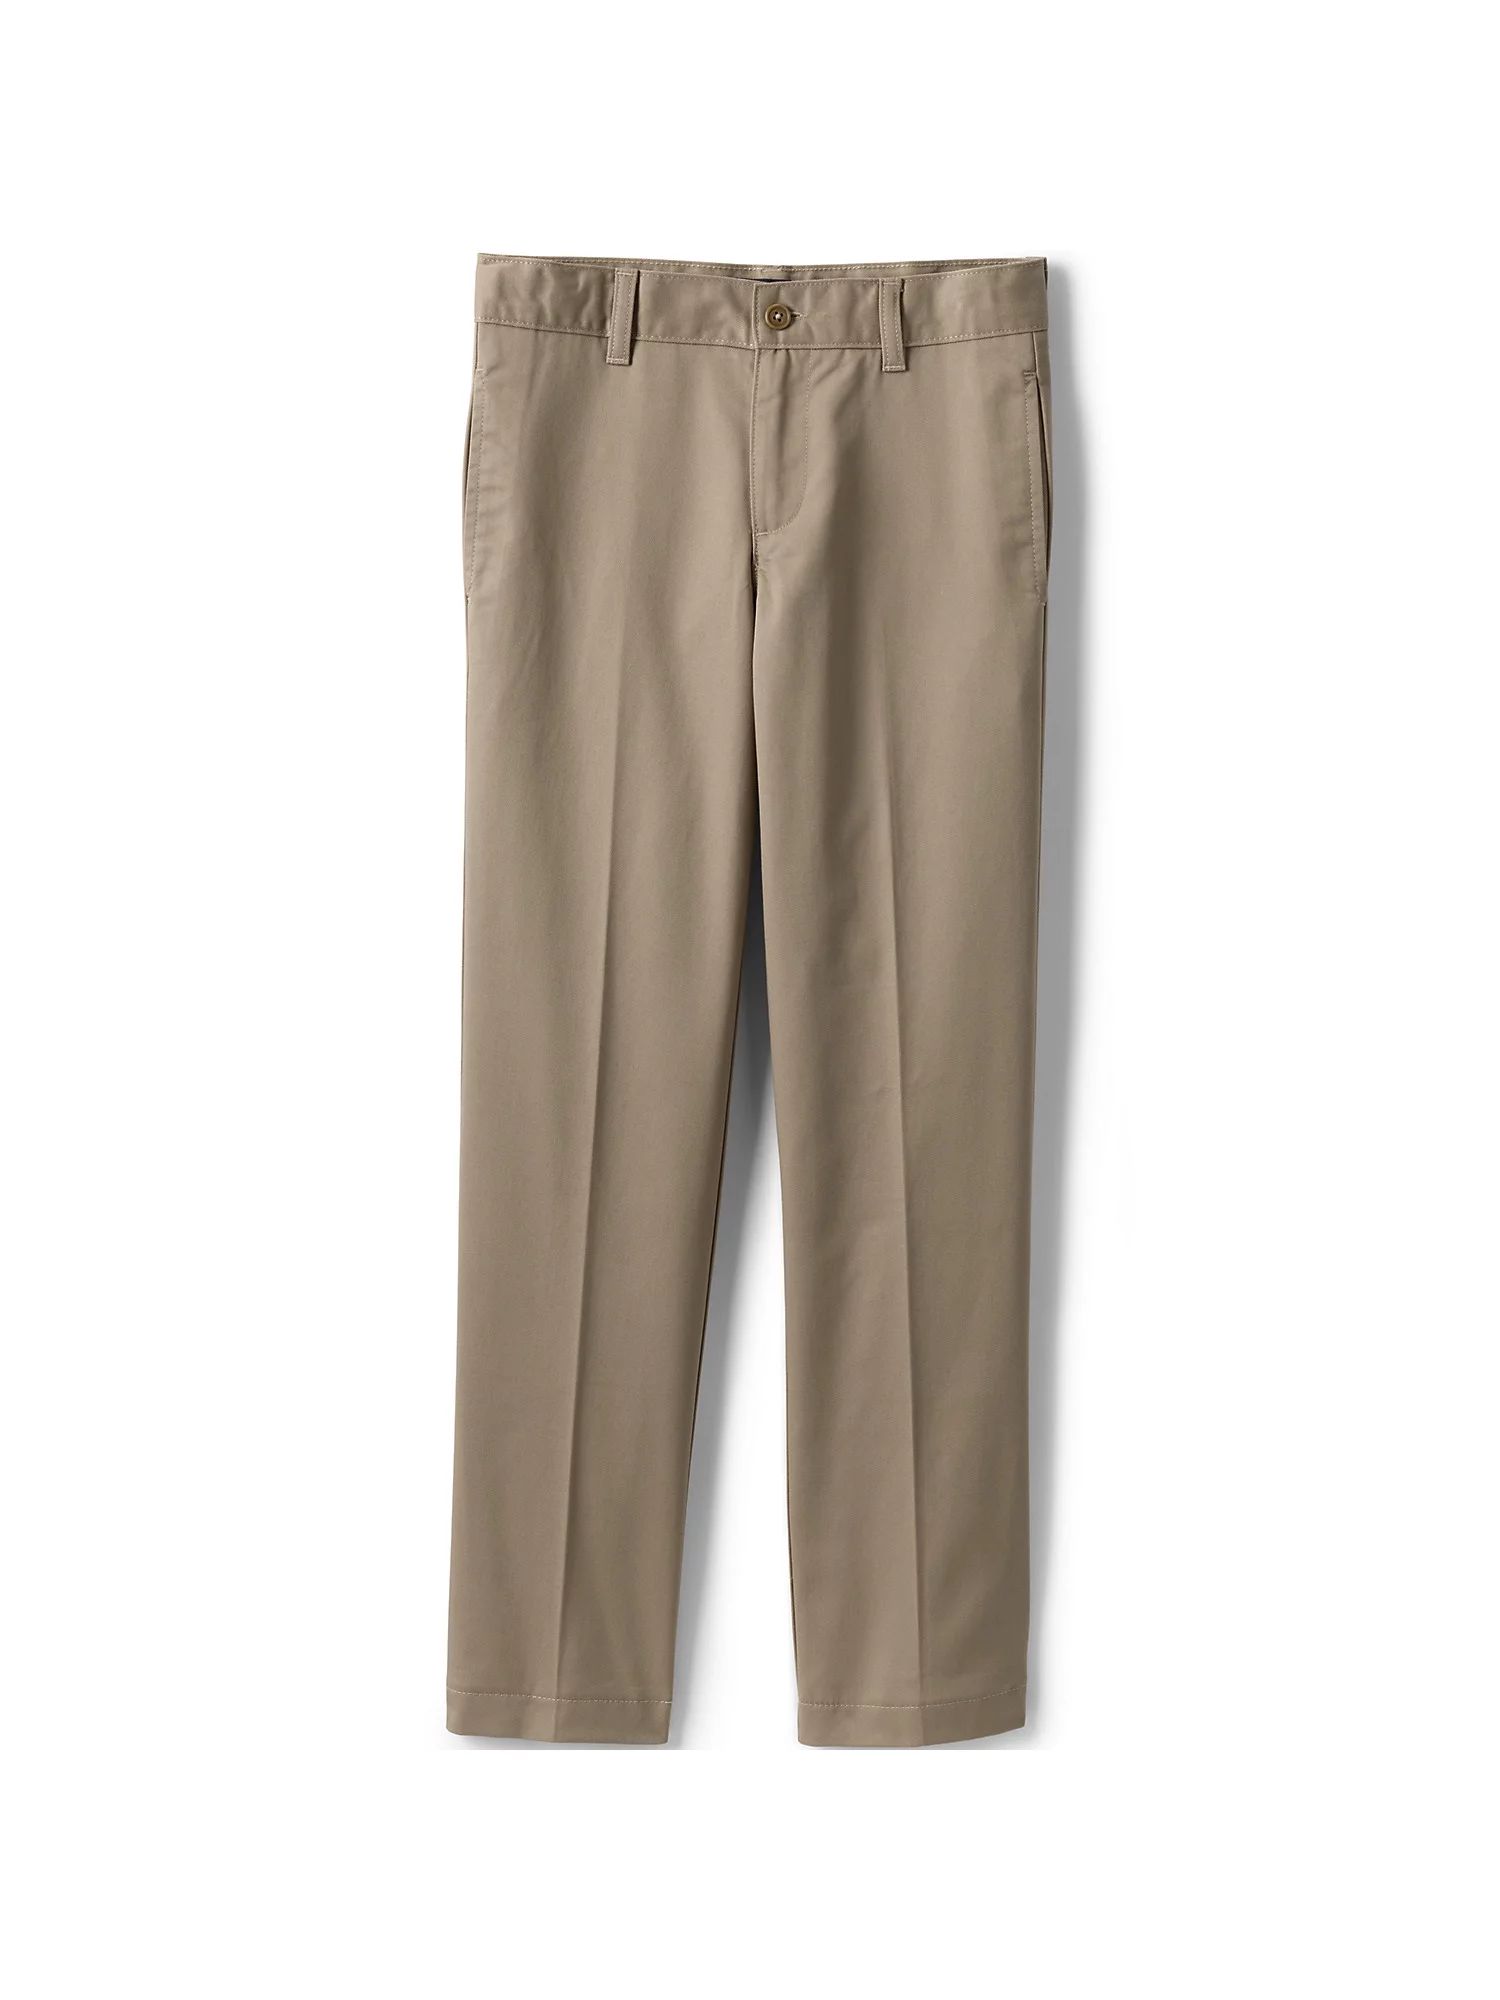 Lands' End School Uniform Boys Tailored Fit Blend Iron Knee Plain Front Pants | Walmart (US)